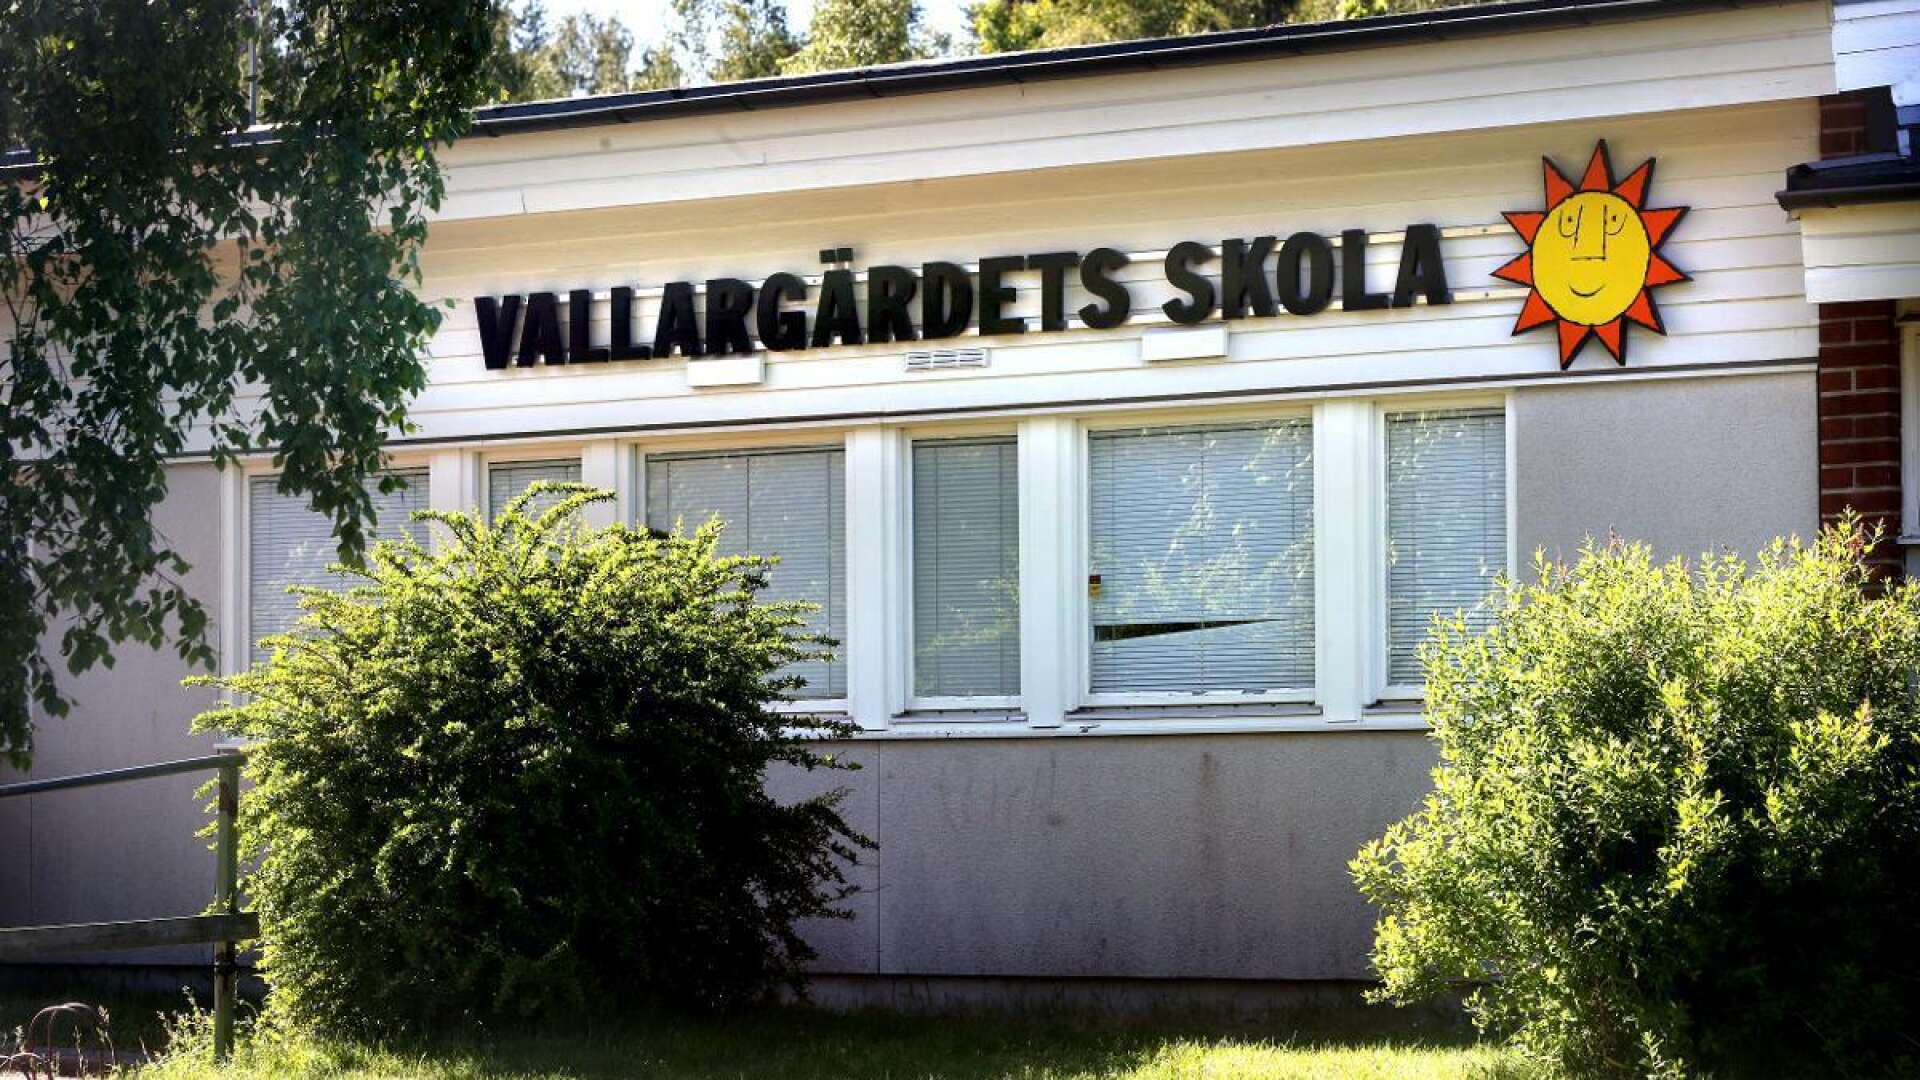 Karlstads kommun vill undersöka möjligheten att riva dagens Vallargärdets skola och bygga nytt. Men först måste tjänstemännen rita på vad som är möjligt att göra på platsen.